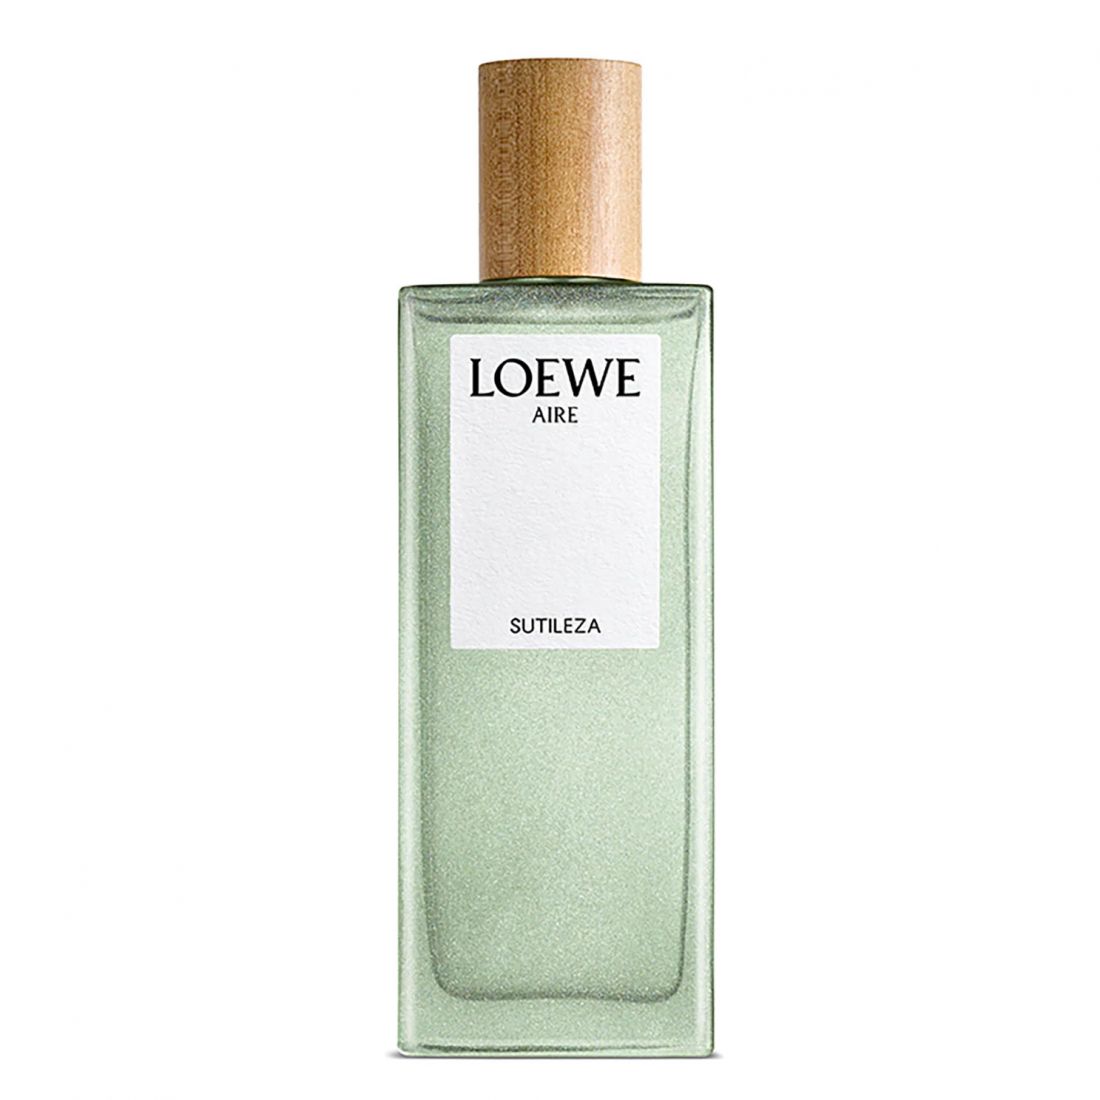 Loewe - Eau de toilette 'Aire Sutileza' - 50 ml